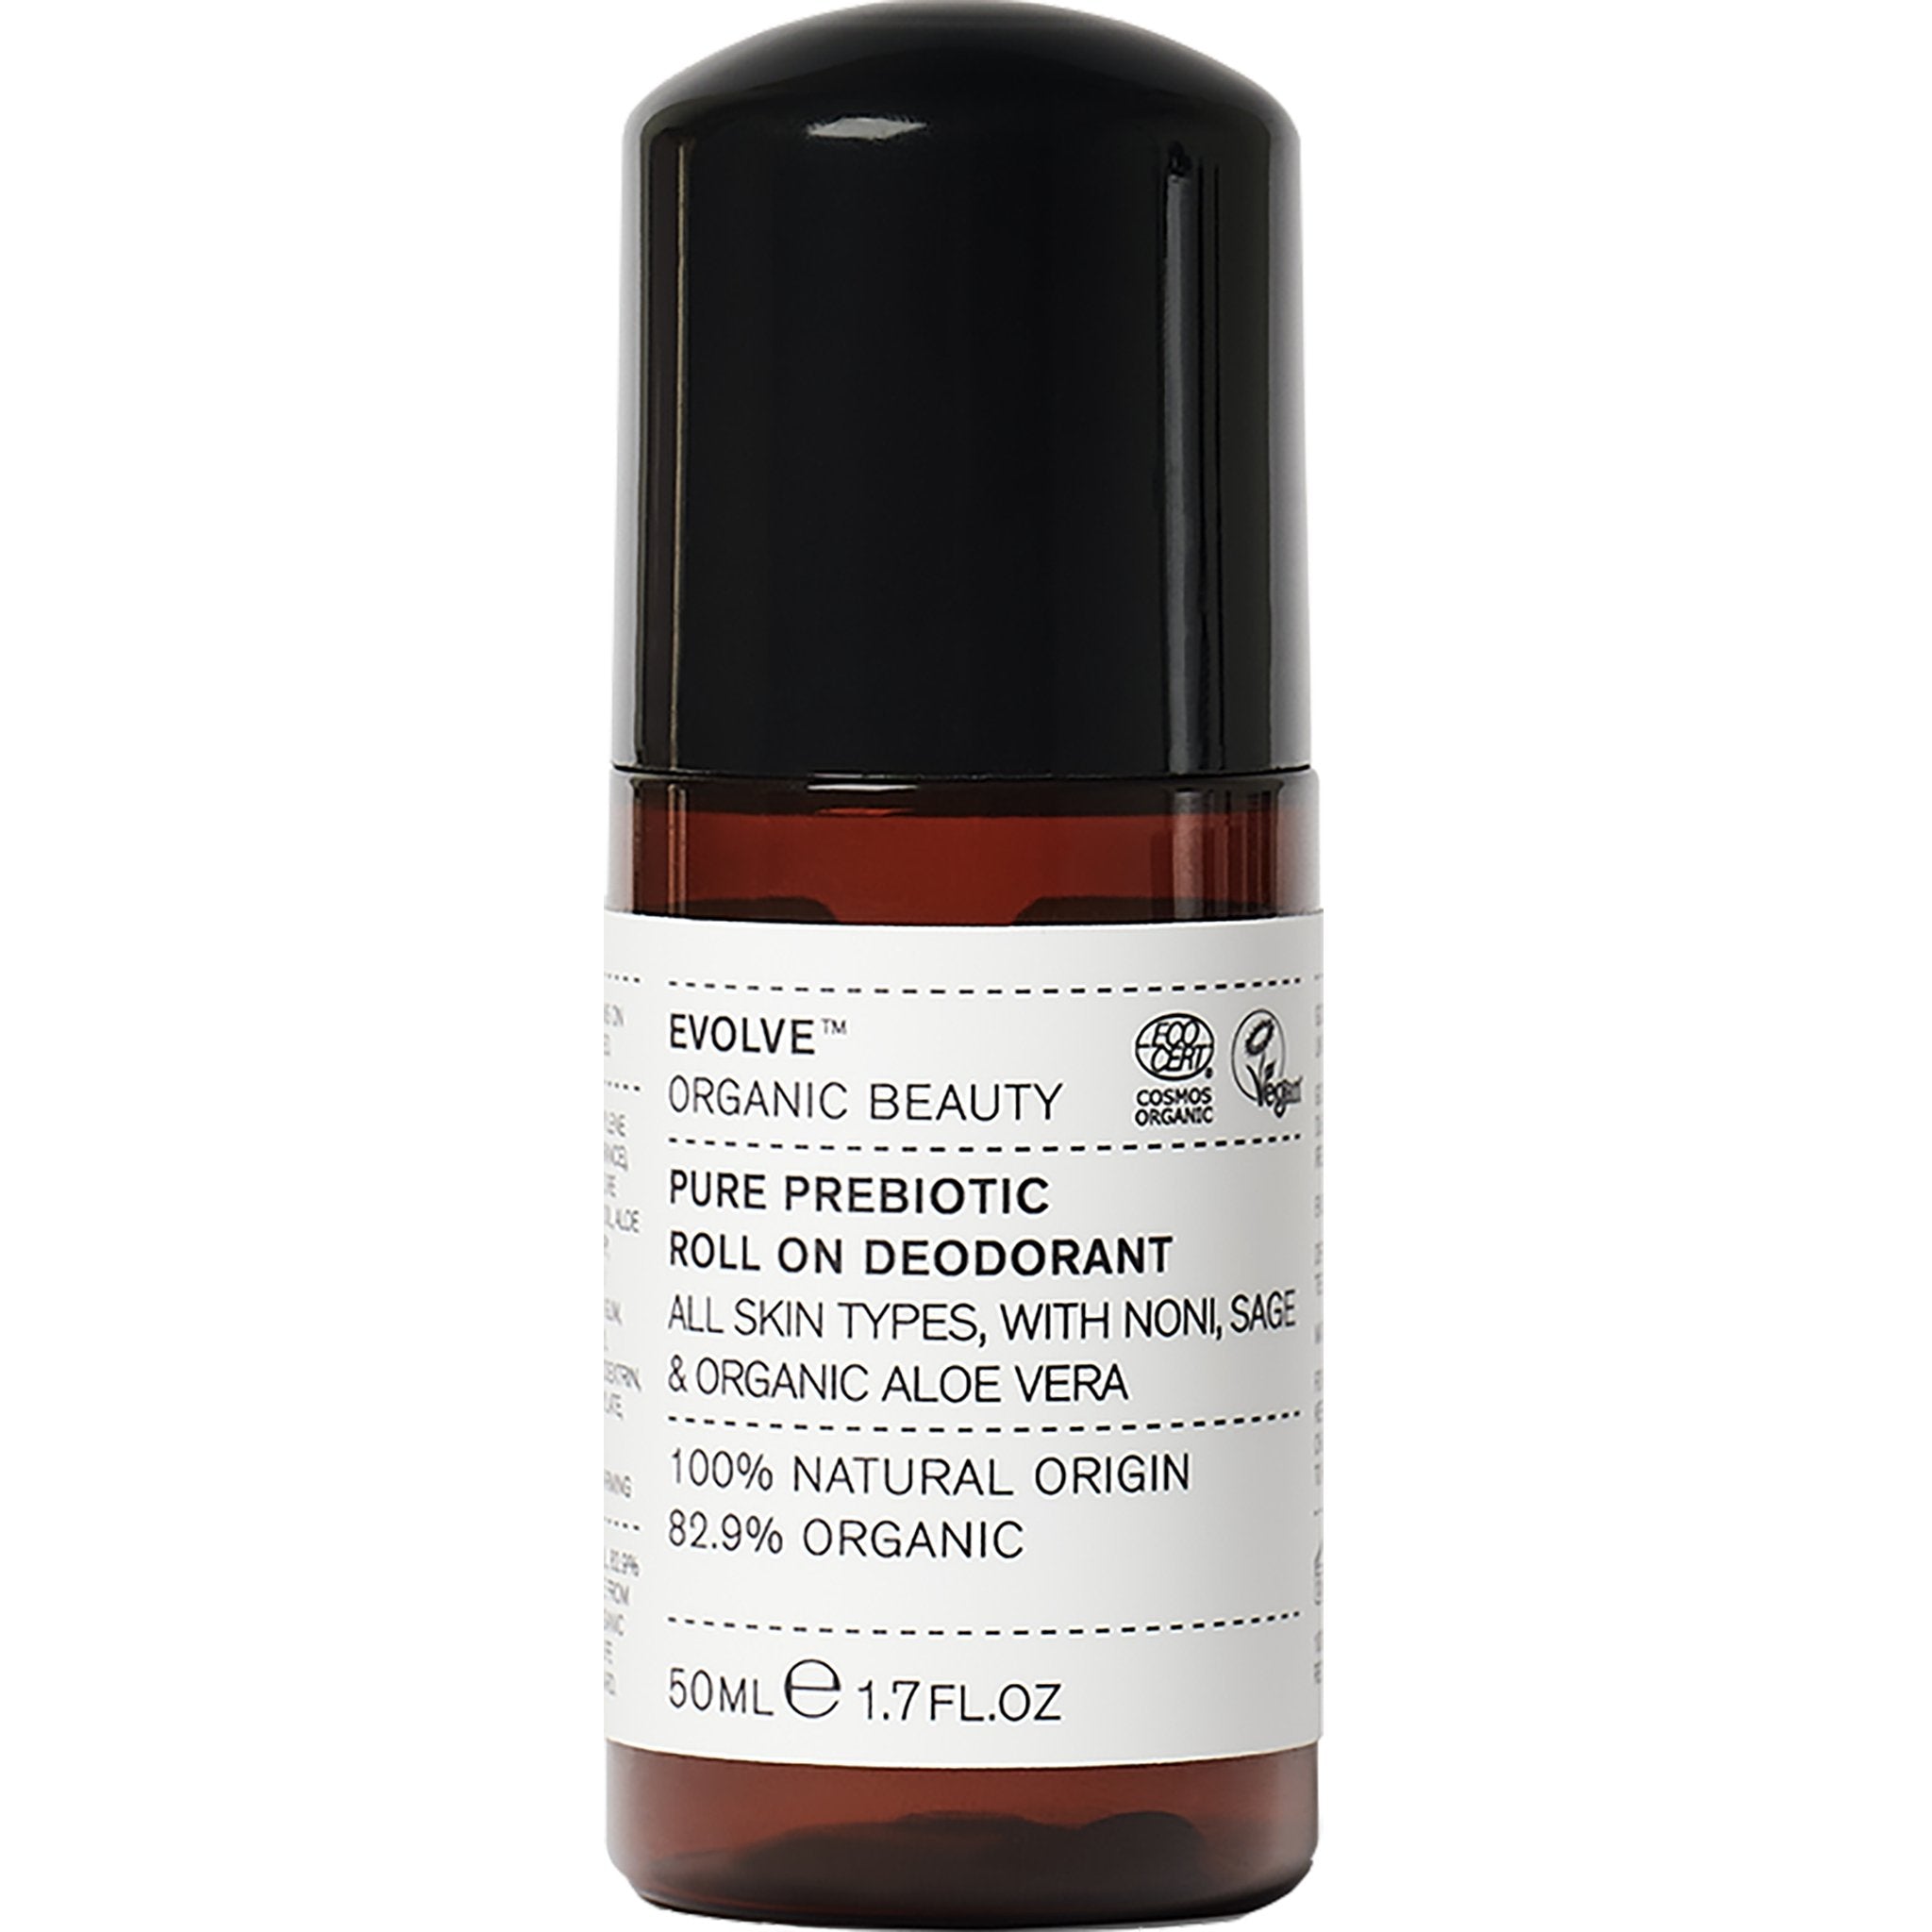 Pure Prebiotic Roll-on Deodorant - mypure.co.uk